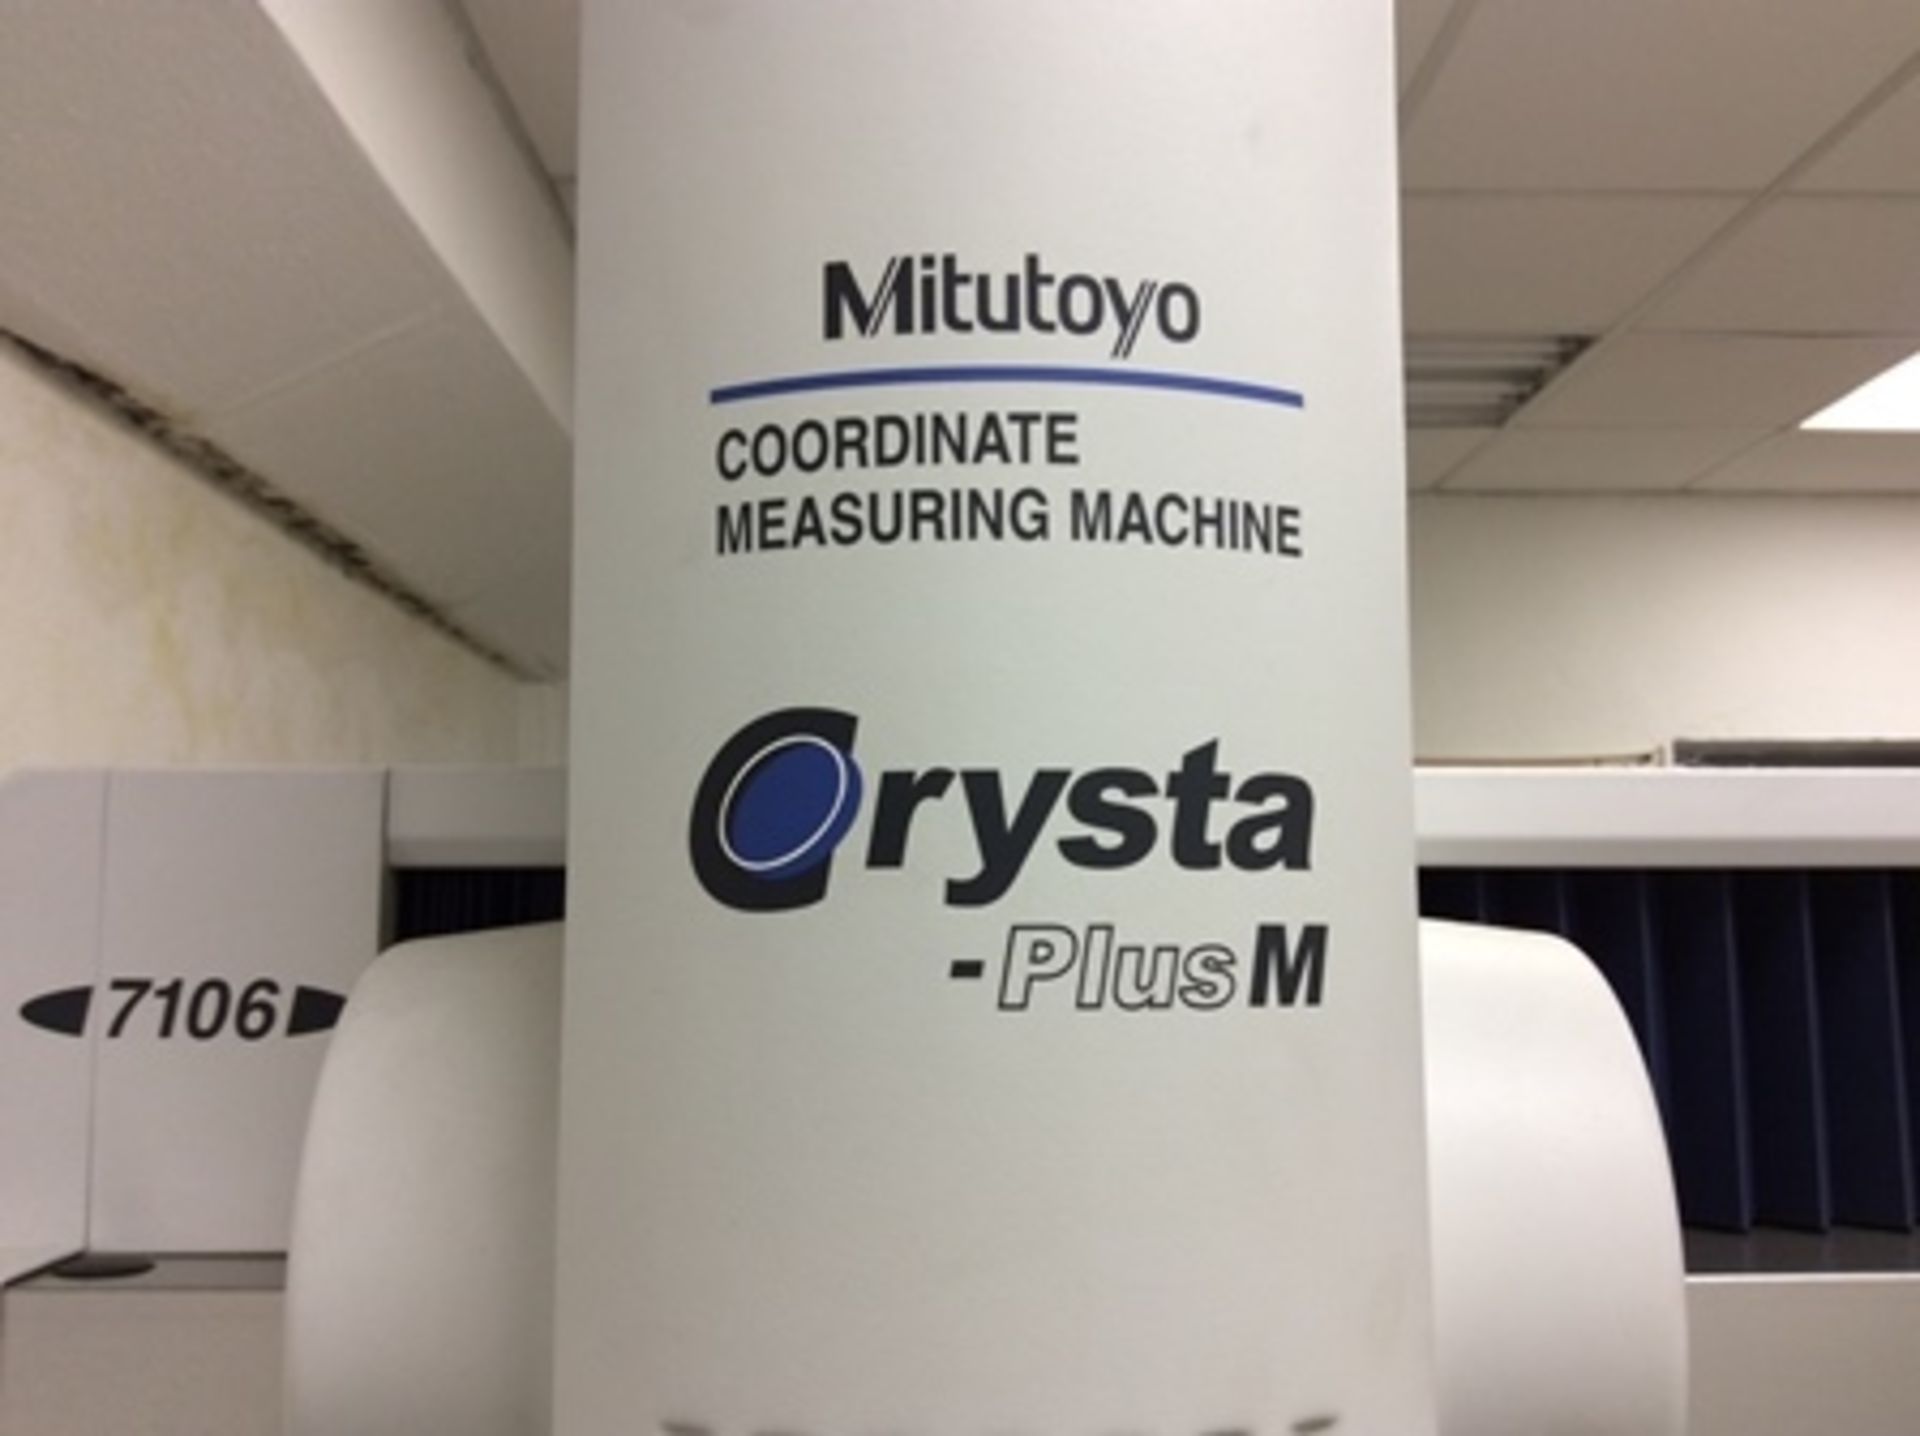 Máquina para medición por coordenadas marca Mitutoyo mod. Crystal - Plus M serie 01558810, incluye - Image 6 of 32